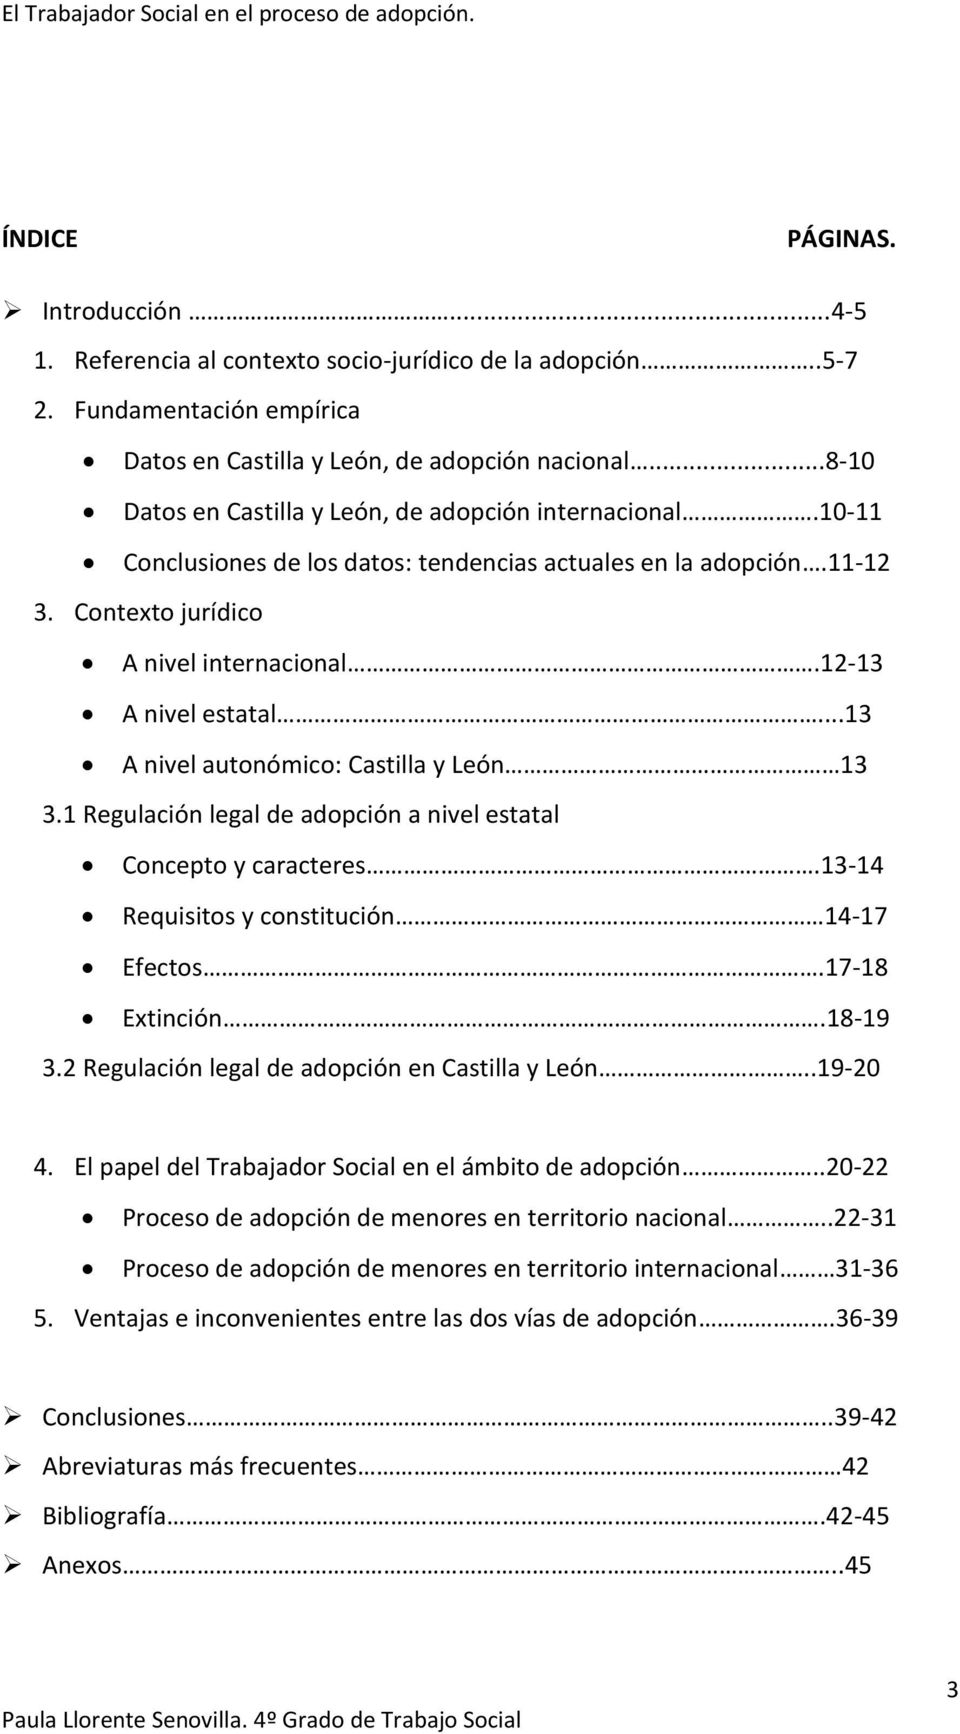 ..13 A nivel autonómico: Castilla y León 13 3.1 Regulación legal de adopción a nivel estatal Concepto y caracteres.13-14 Requisitos y constitución 14-17 Efectos.17-18 Extinción.18-19 3.